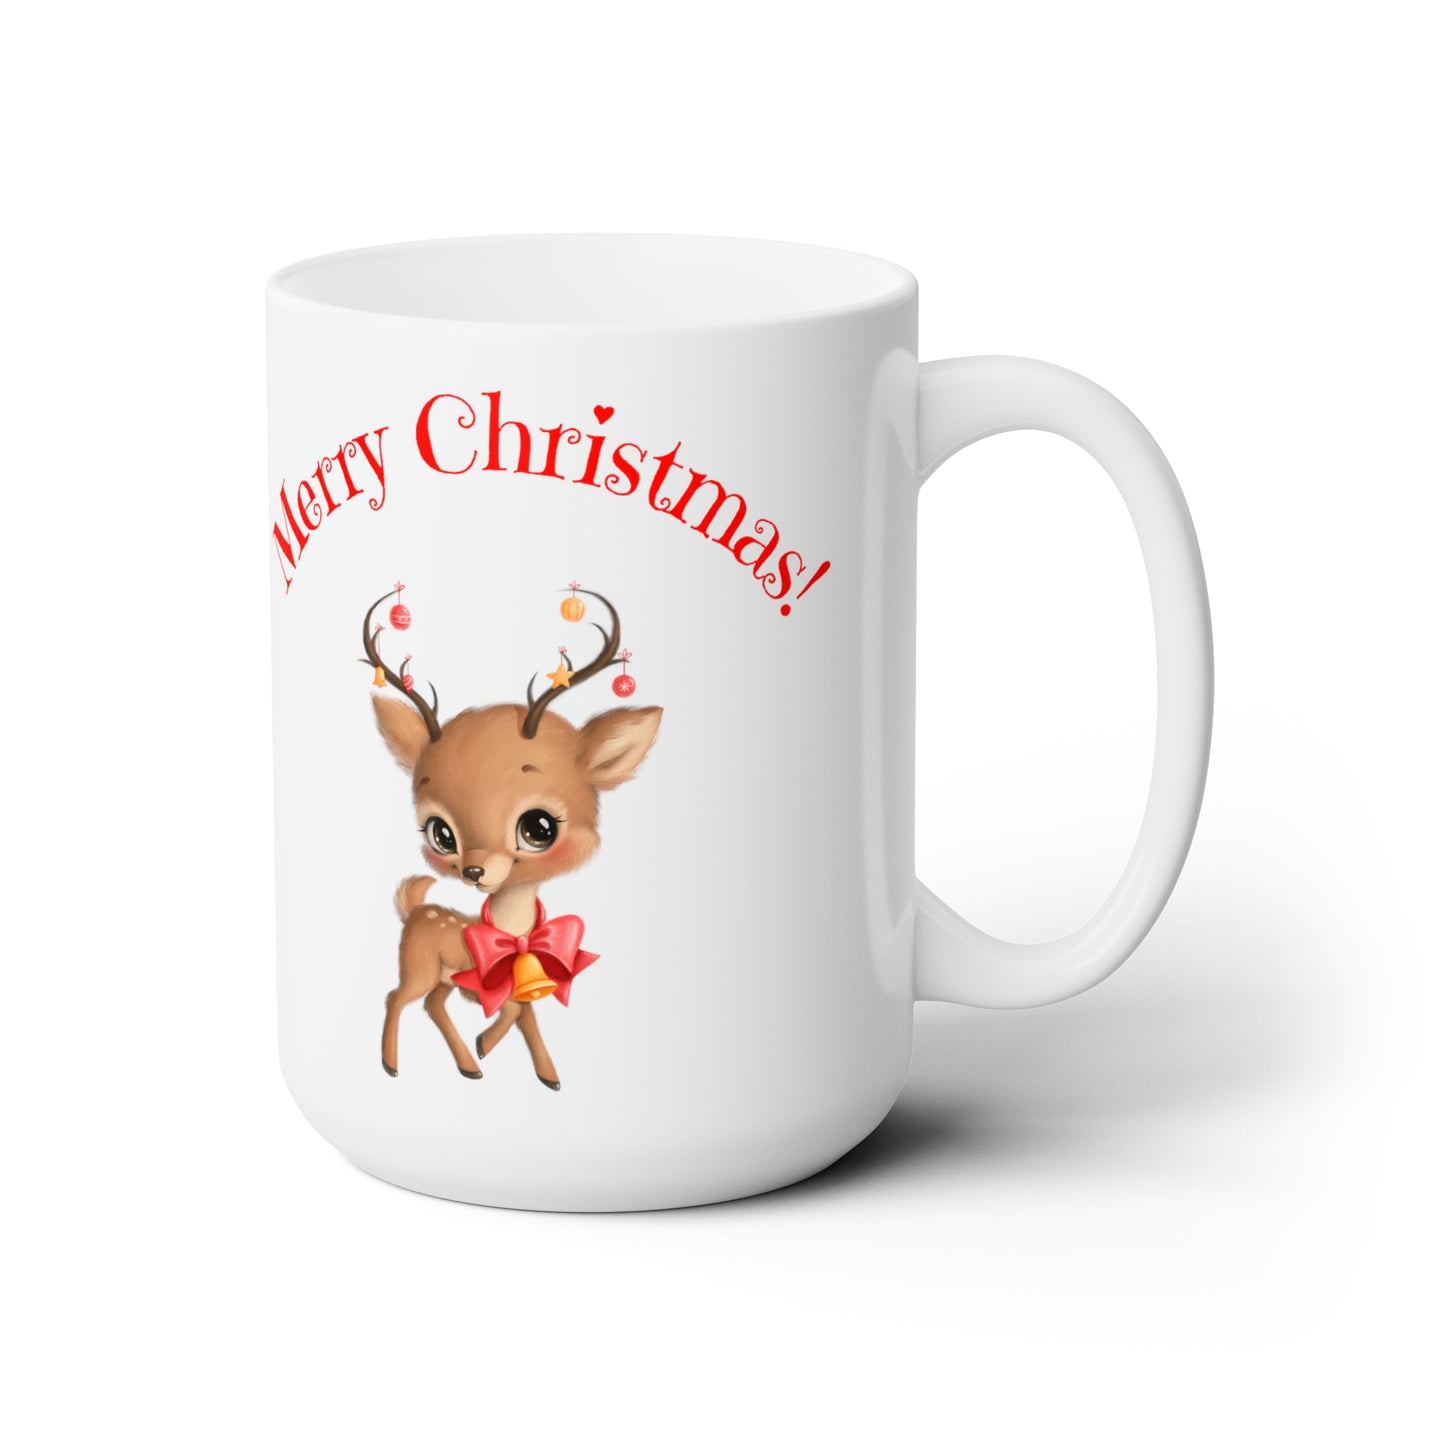 Merry Christmas Theme Mug, Ceramic, 15oz